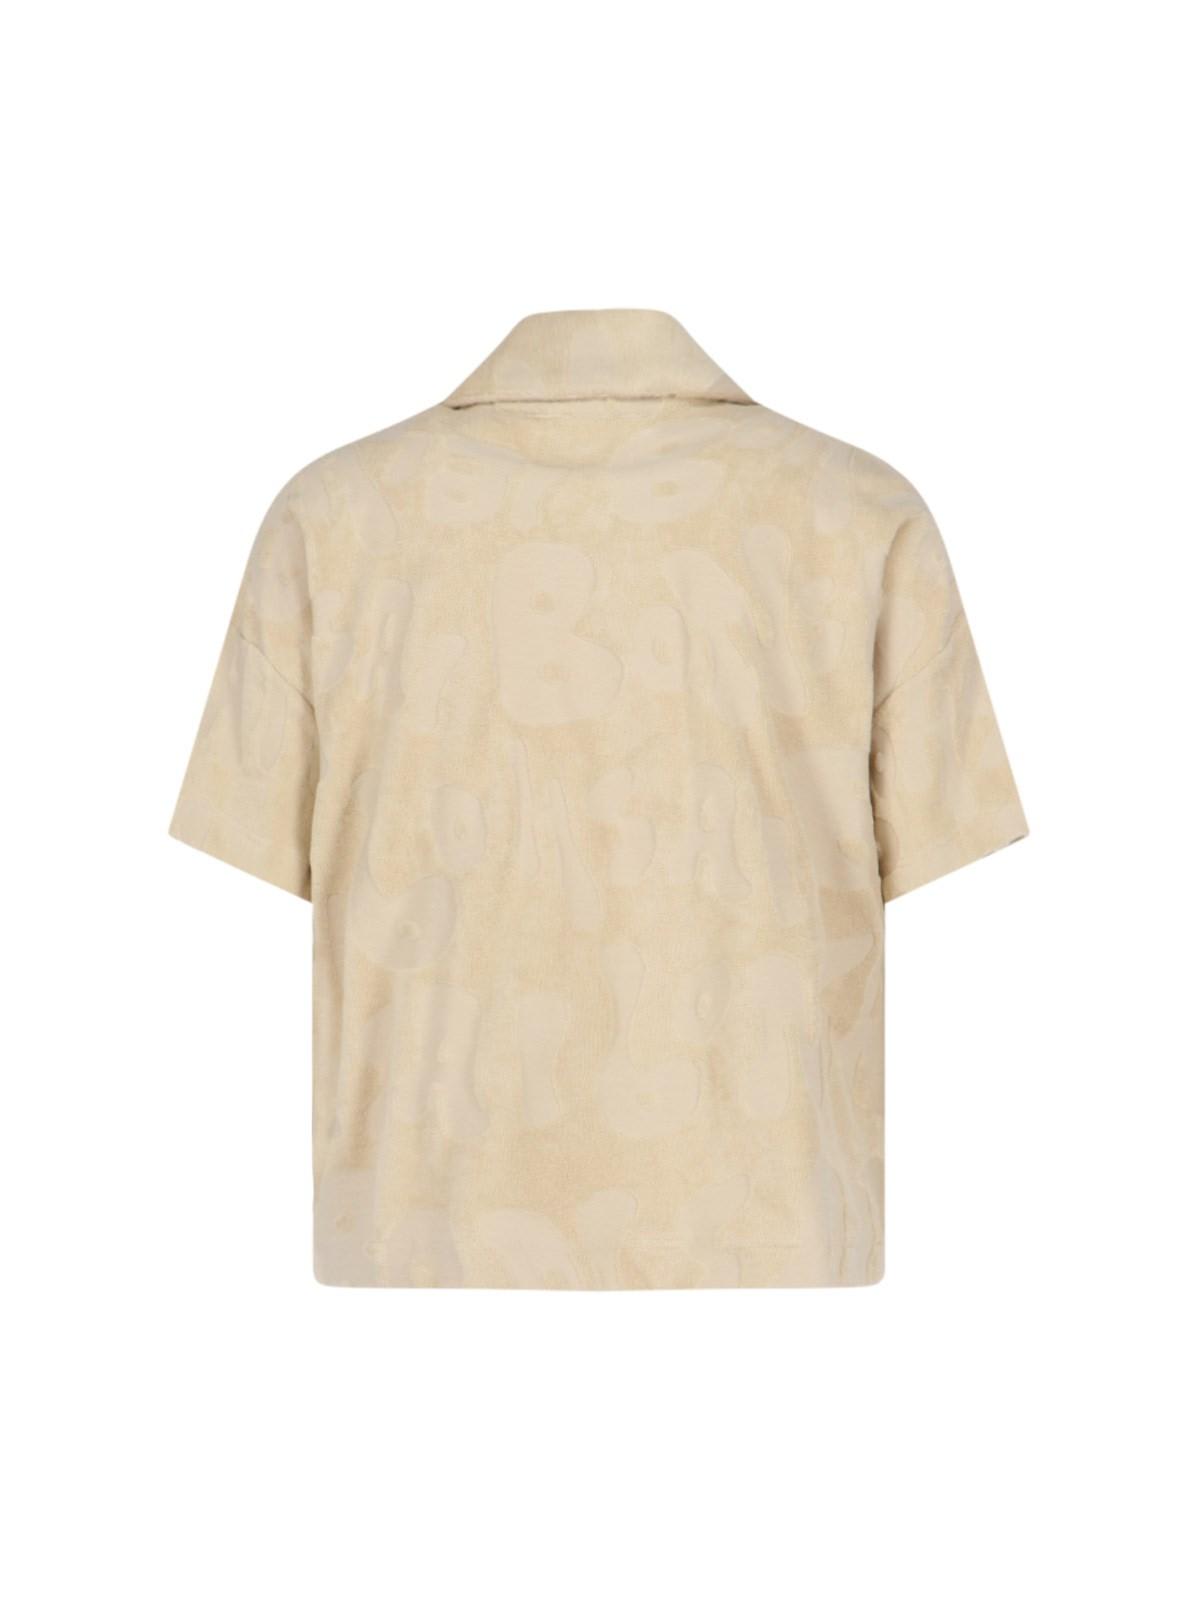 Shop Bonsai Terry Cloth T-shirt In Almoil Almond Oil